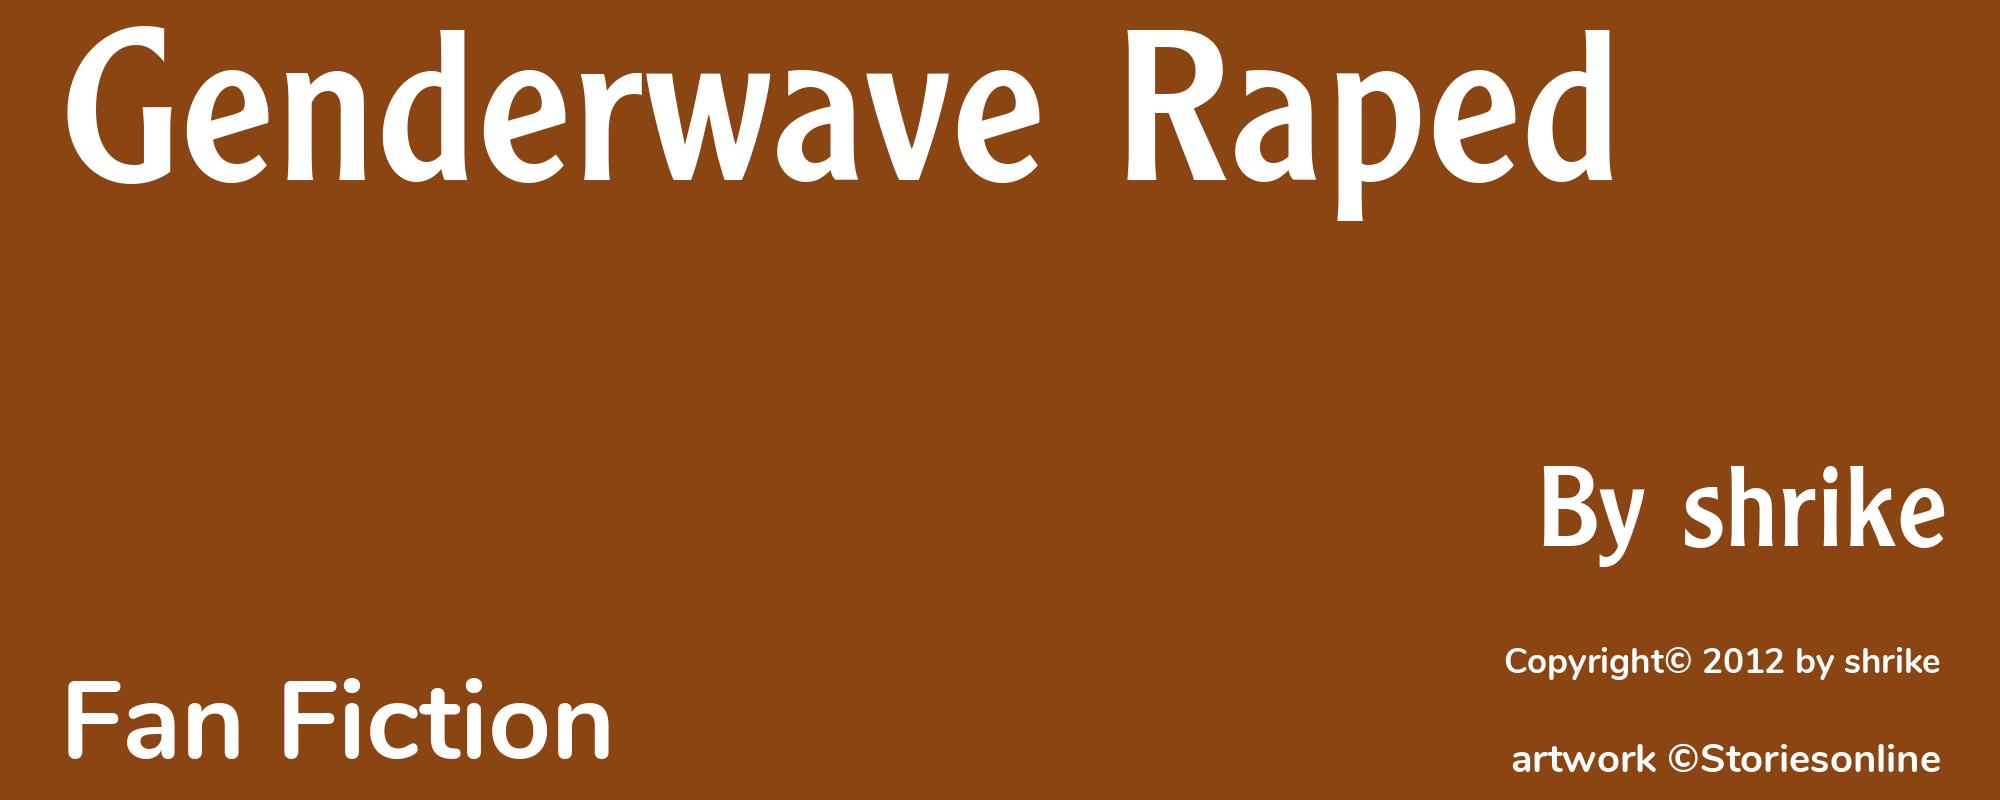 Genderwave Raped - Cover